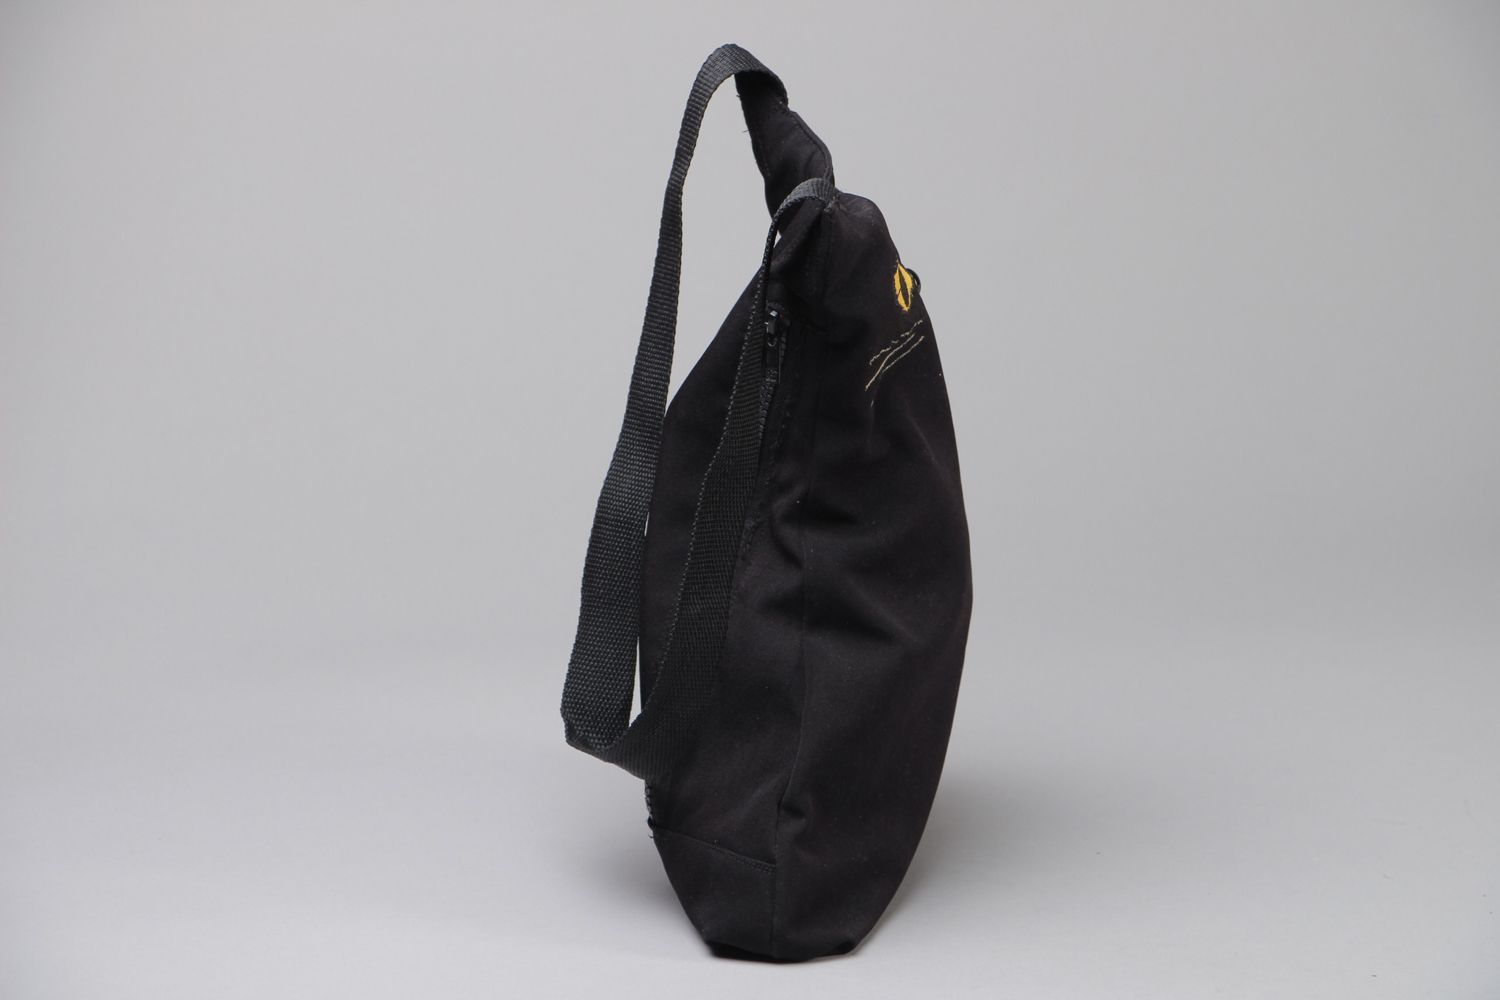 Тканевая сумка ручной работы в виде черного кота фото 2